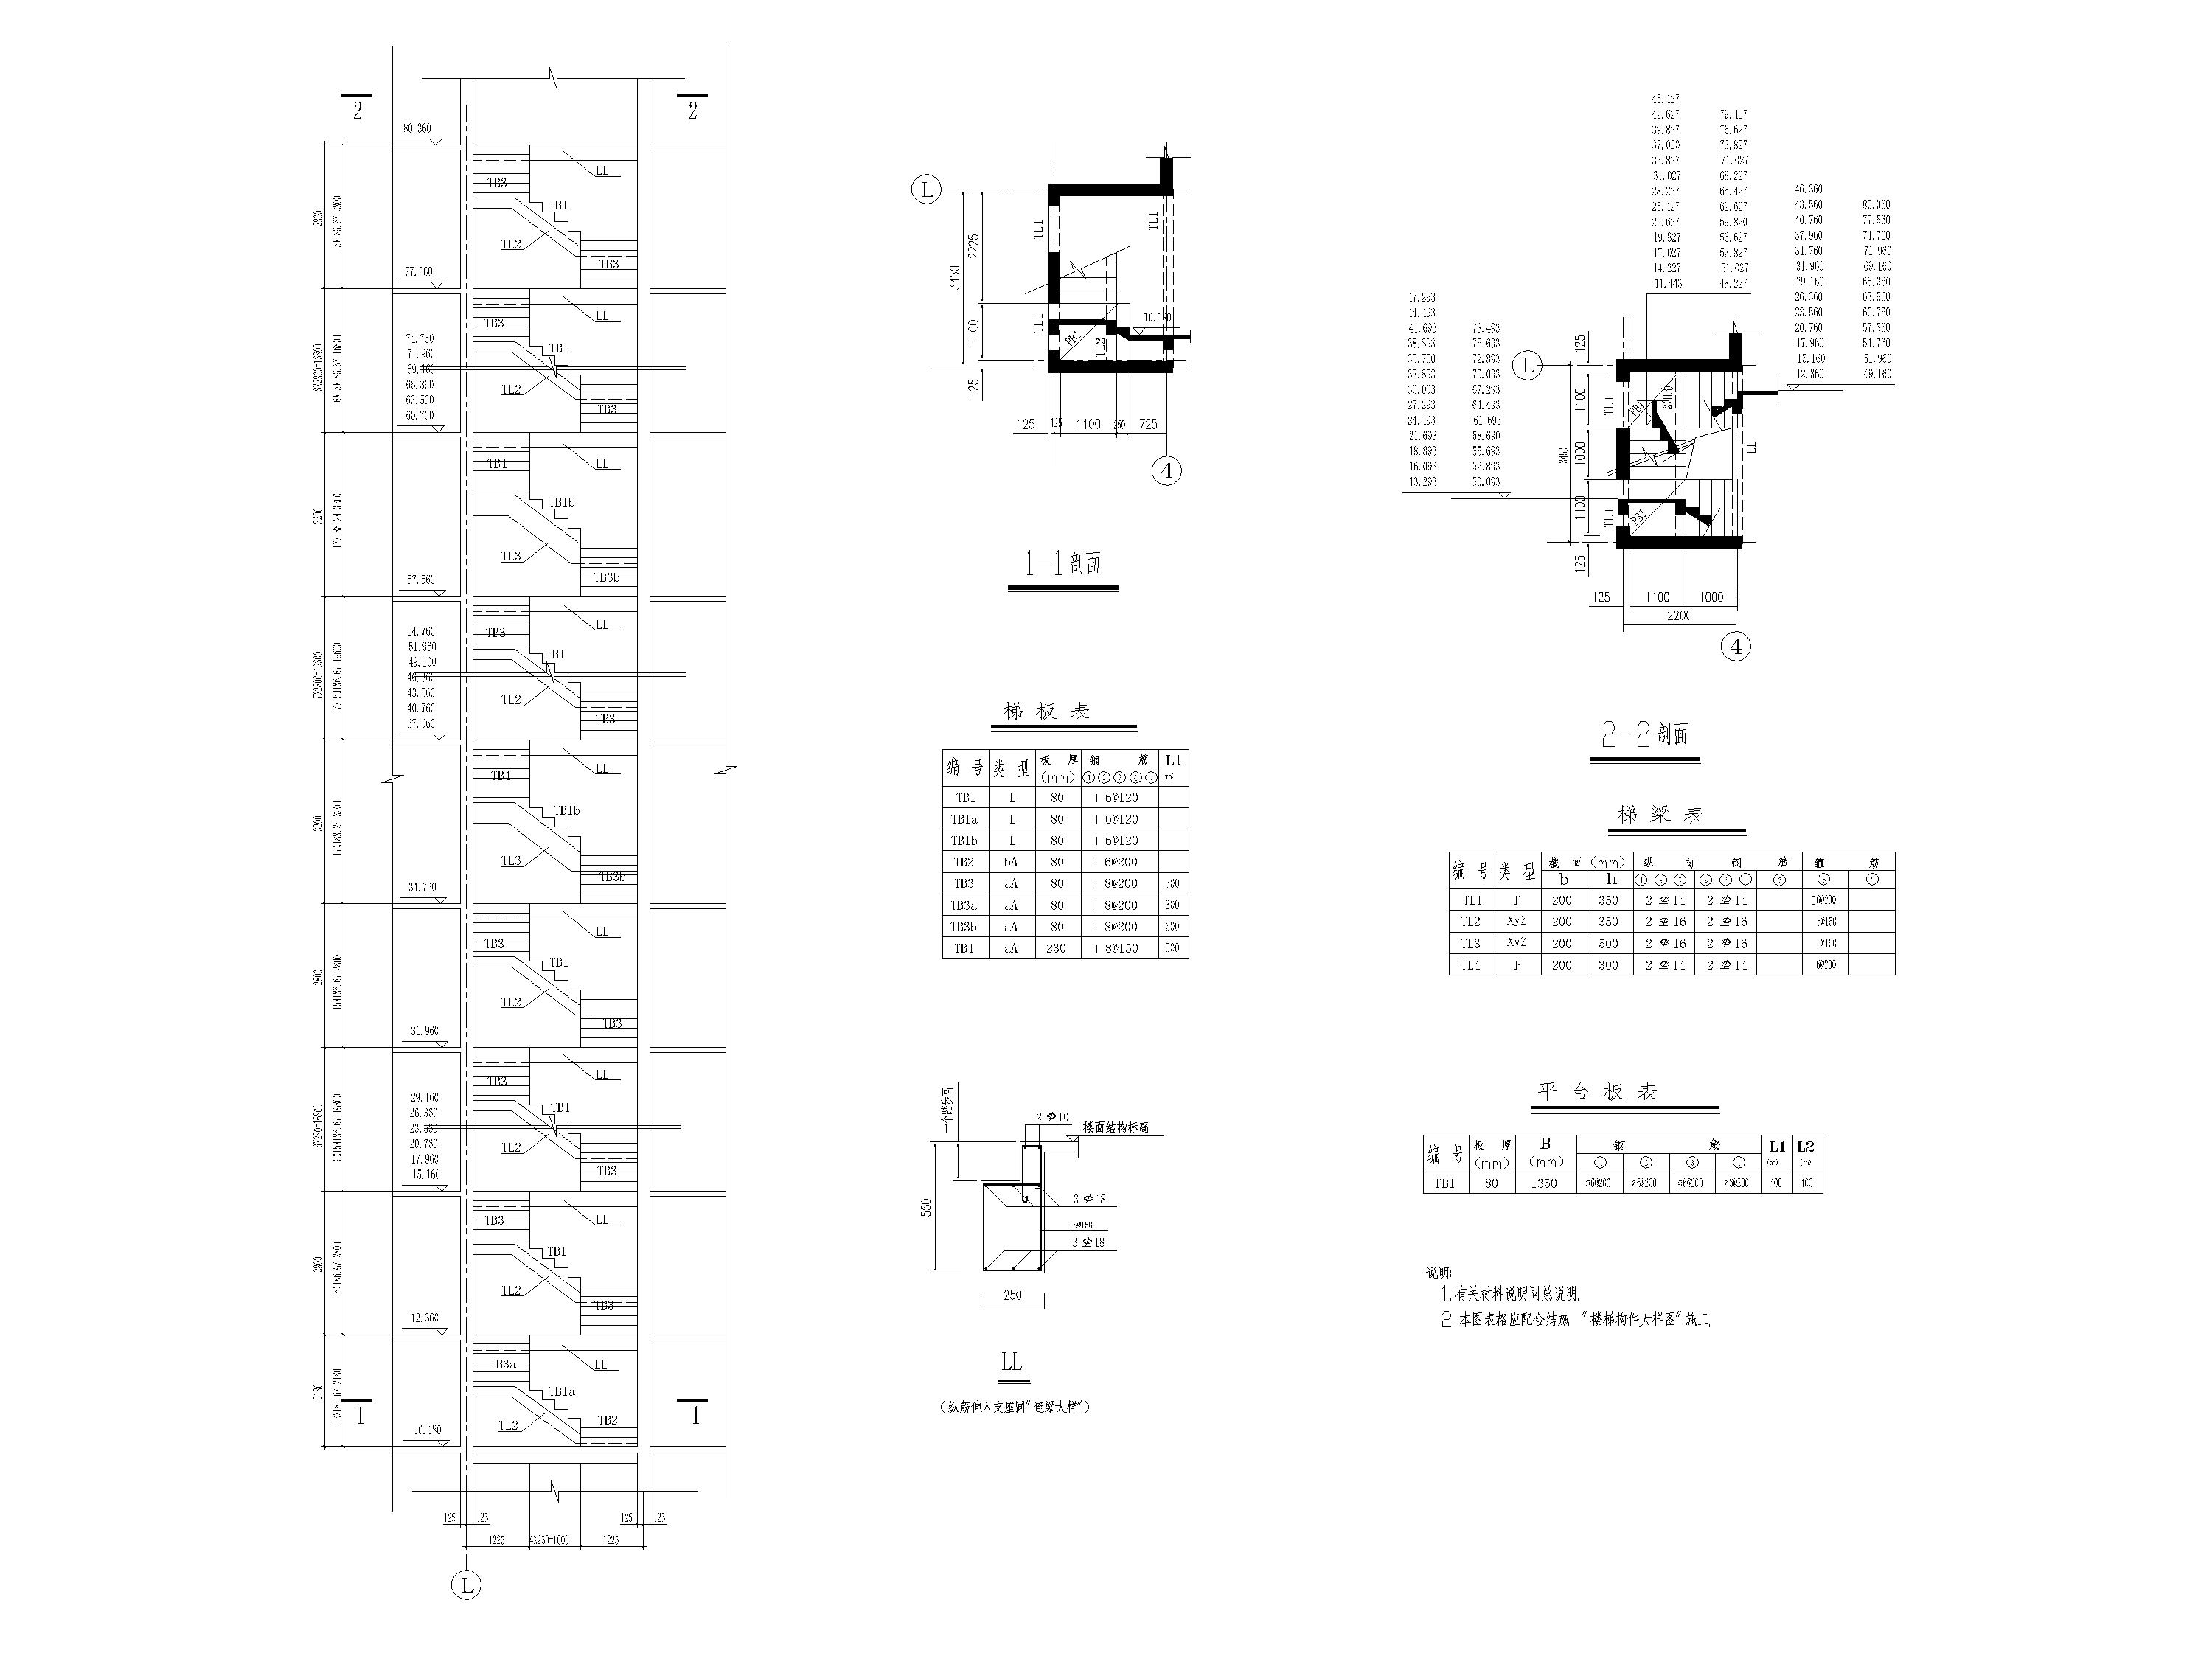 44个普通建筑楼梯节点剖面详图-平法标注的梁式楼梯节点